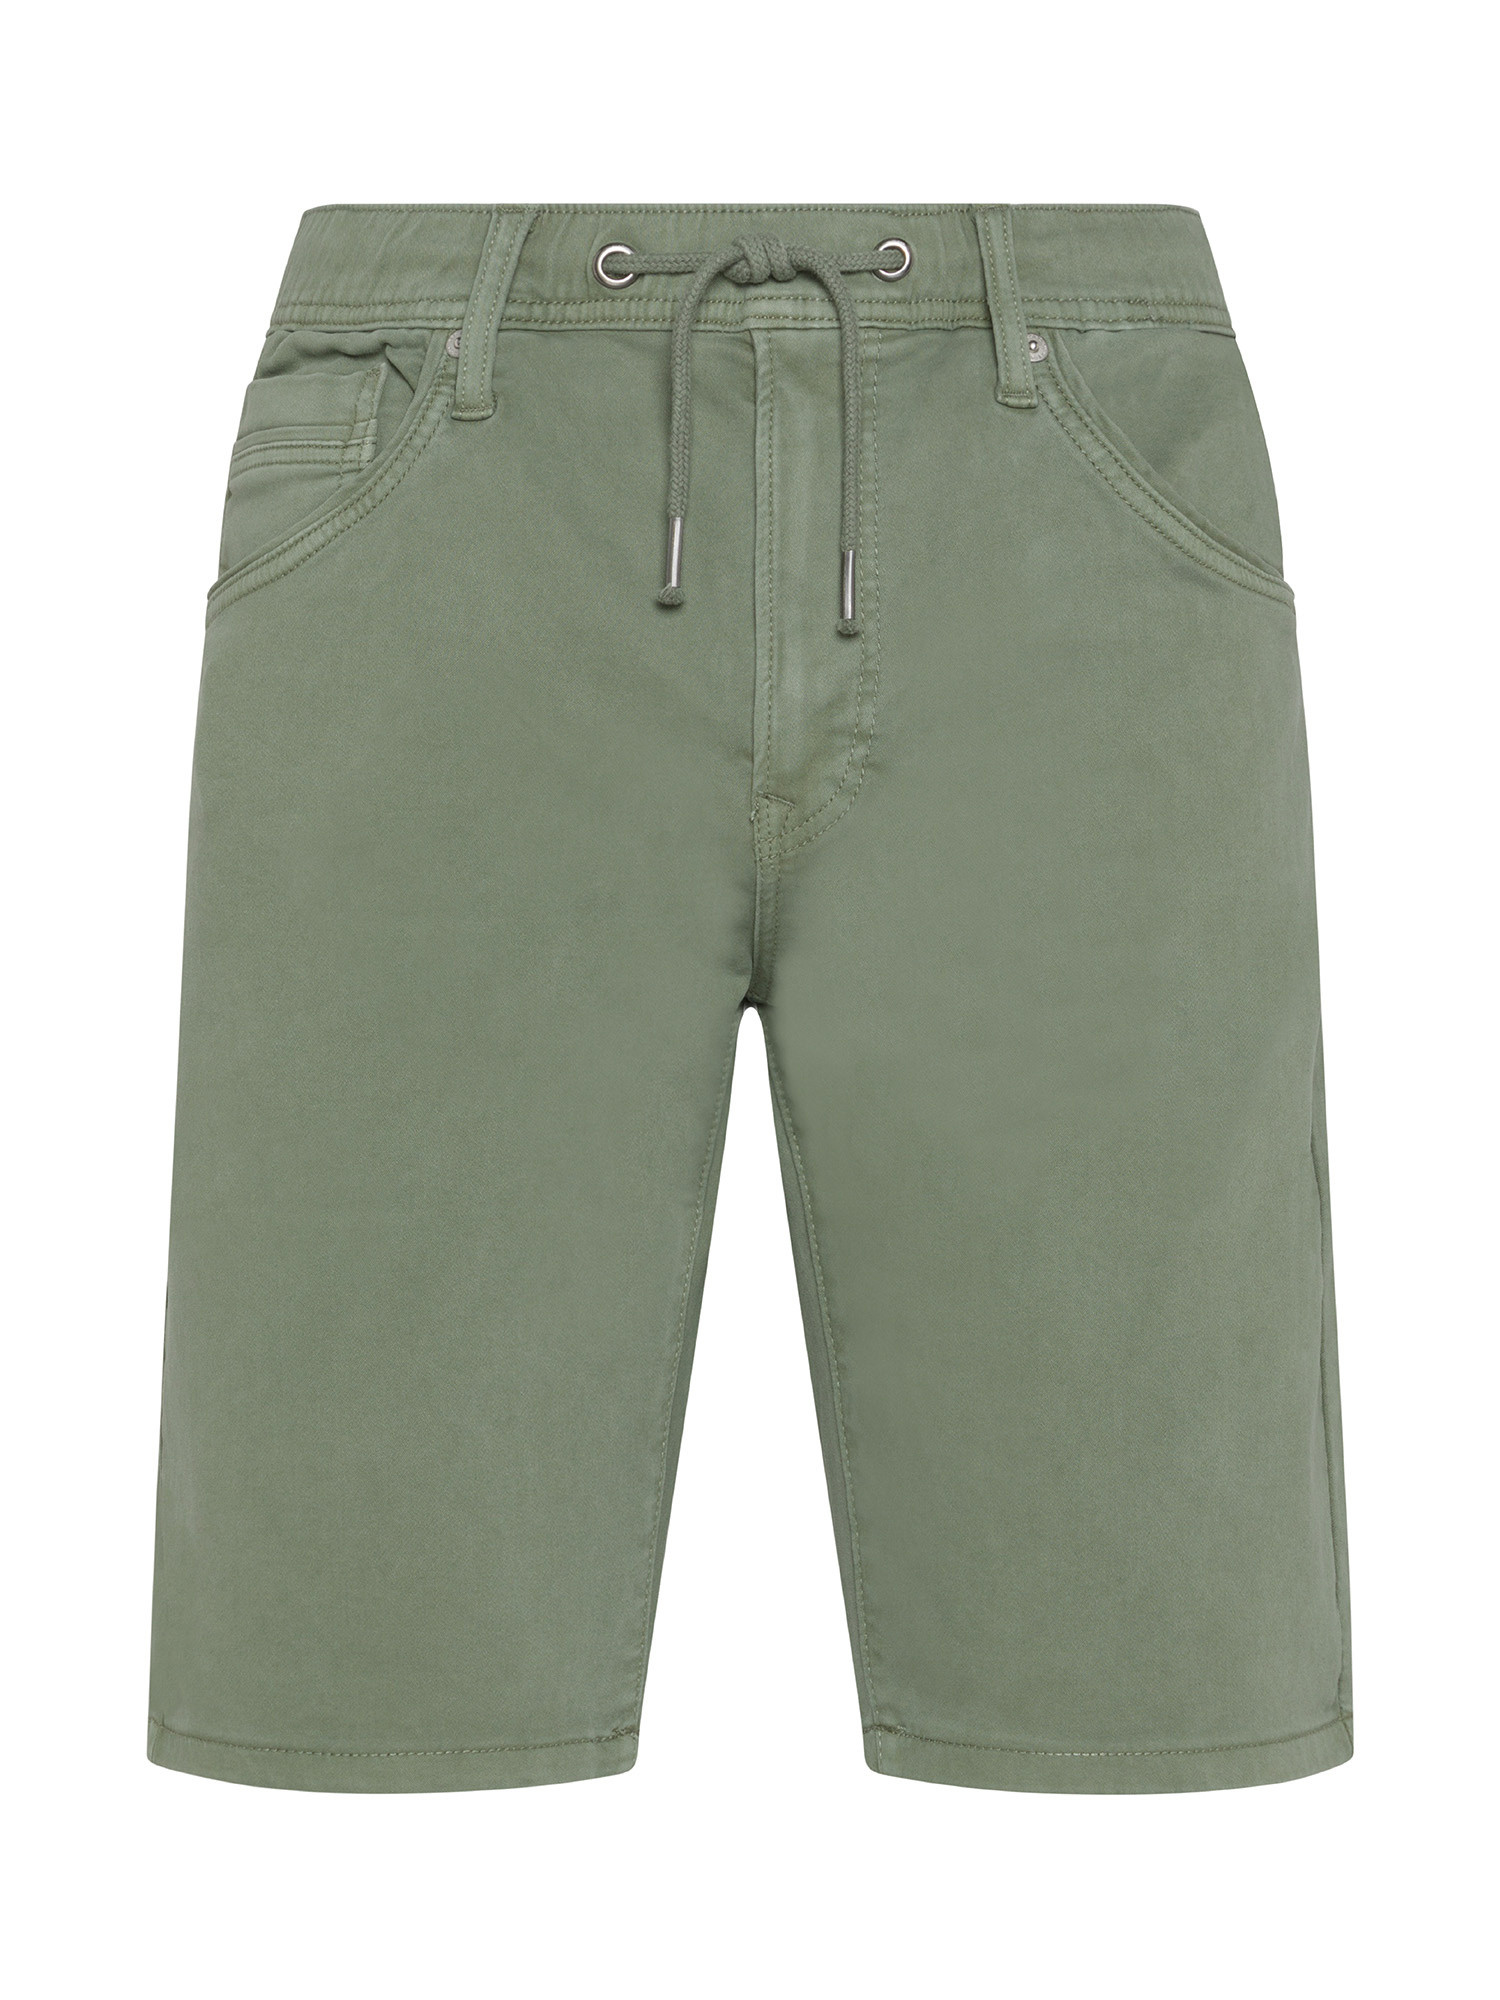 Pepe Jeans - Slim fit five pocket Bermuda shorts, Light Green, large image number 0